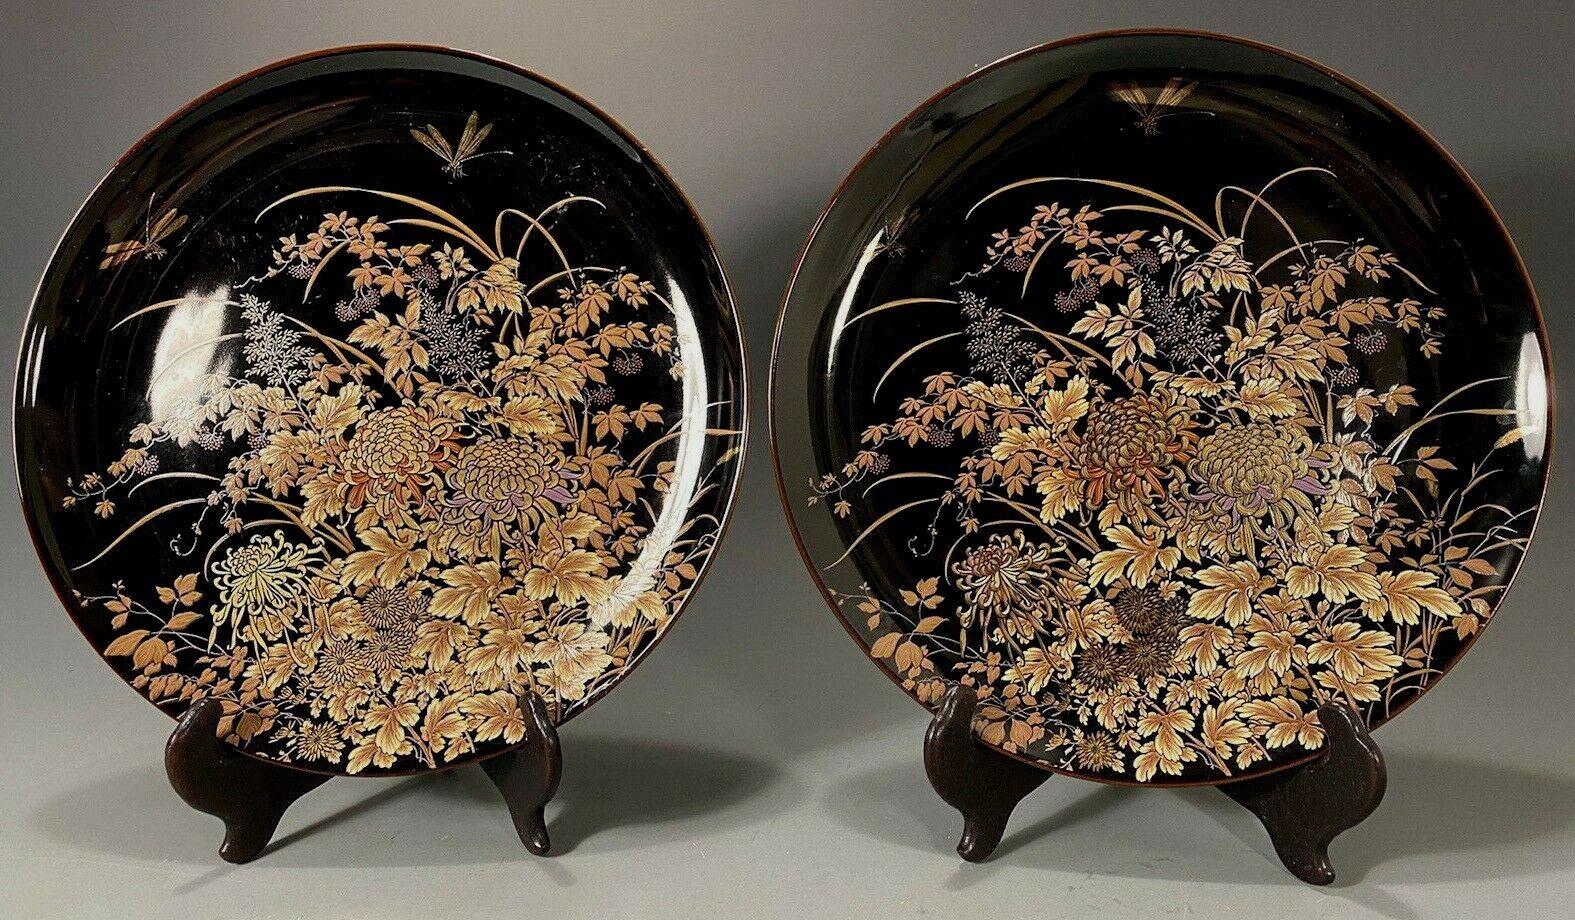 Pair of Shibata Japan Black Porcelain Plate w/ Dragonflies Flower Decoration